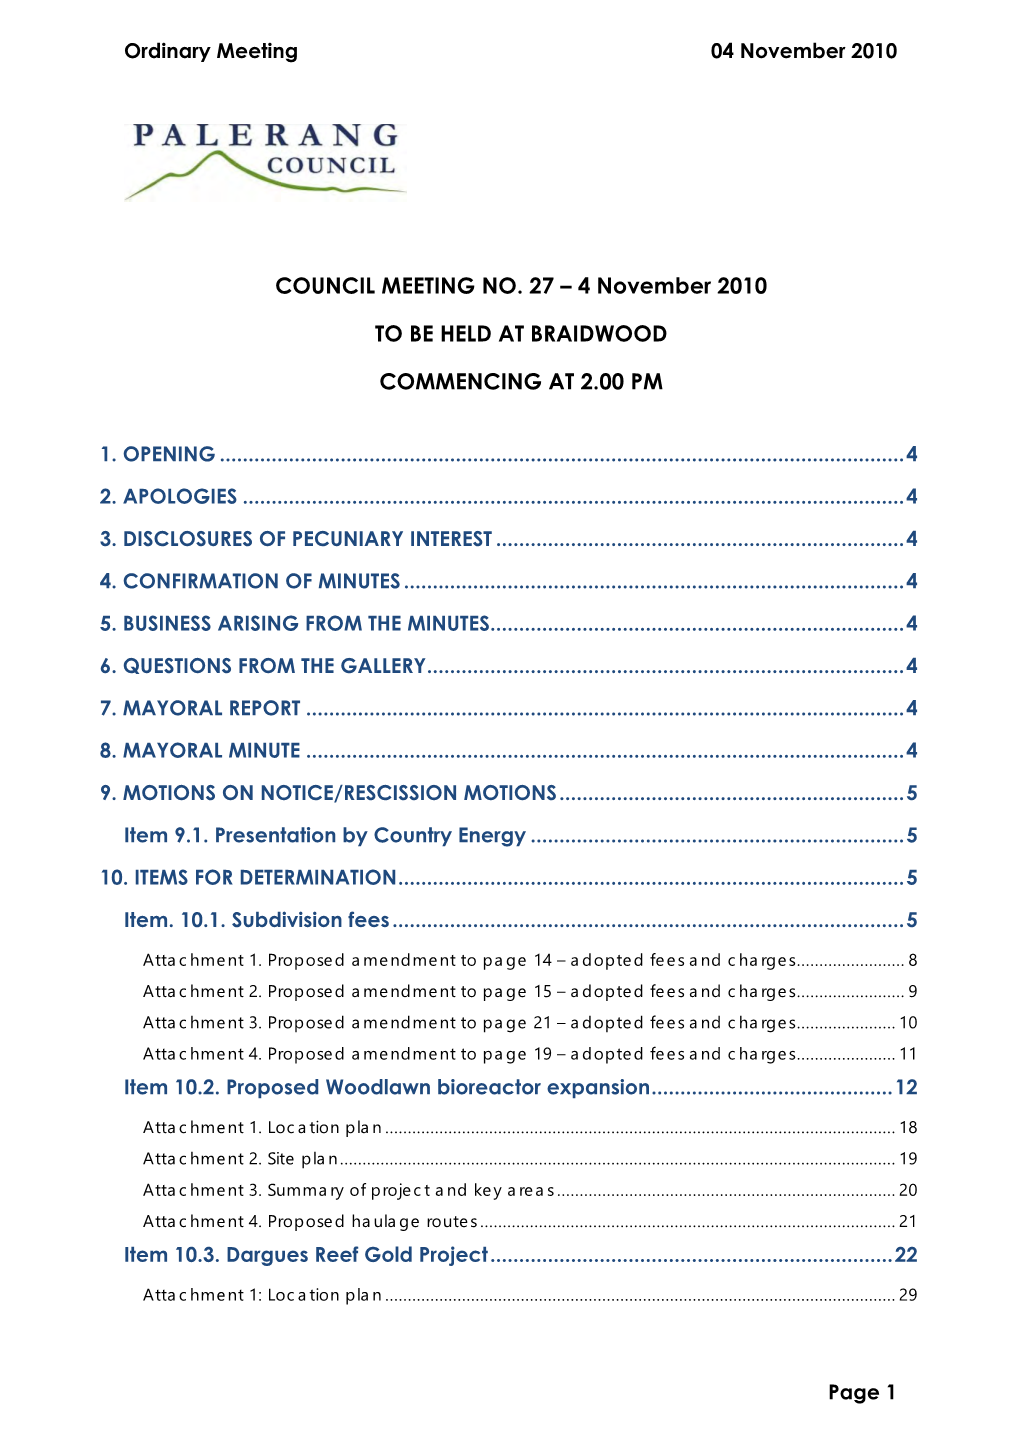 COUNCIL MEETING NO. 27 – 4 November 2010 to BE HELD AT